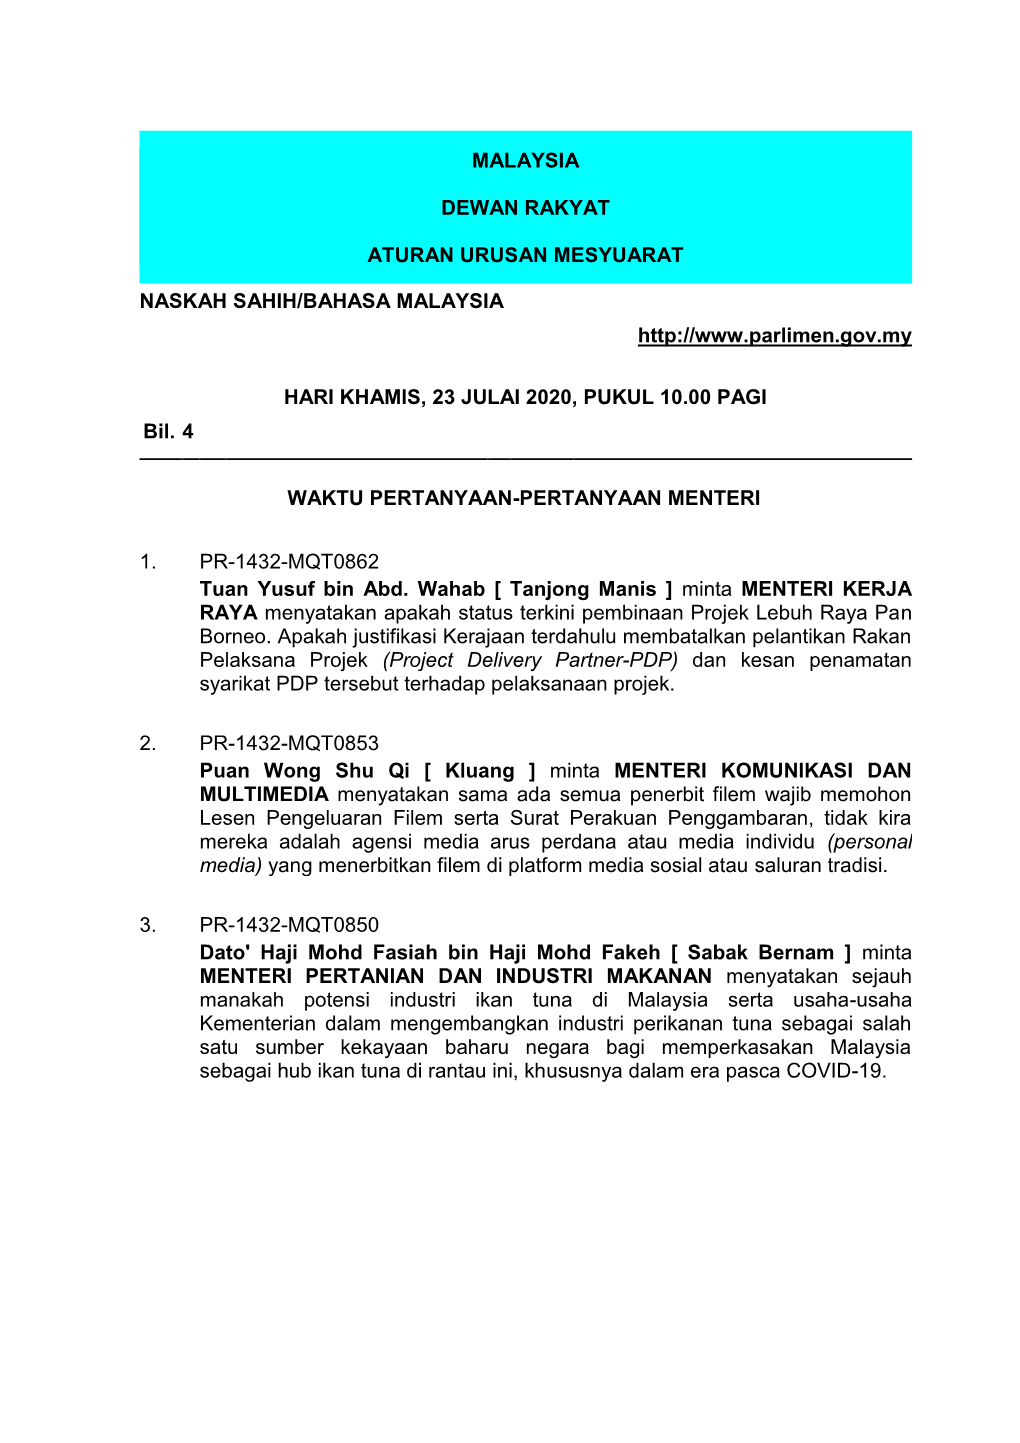 Malaysia Dewan Rakyat Aturan Urusan Mesyuarat Naskah Sahih/Bahasa Malaysia Hari Khamis, 23 Julai 2020